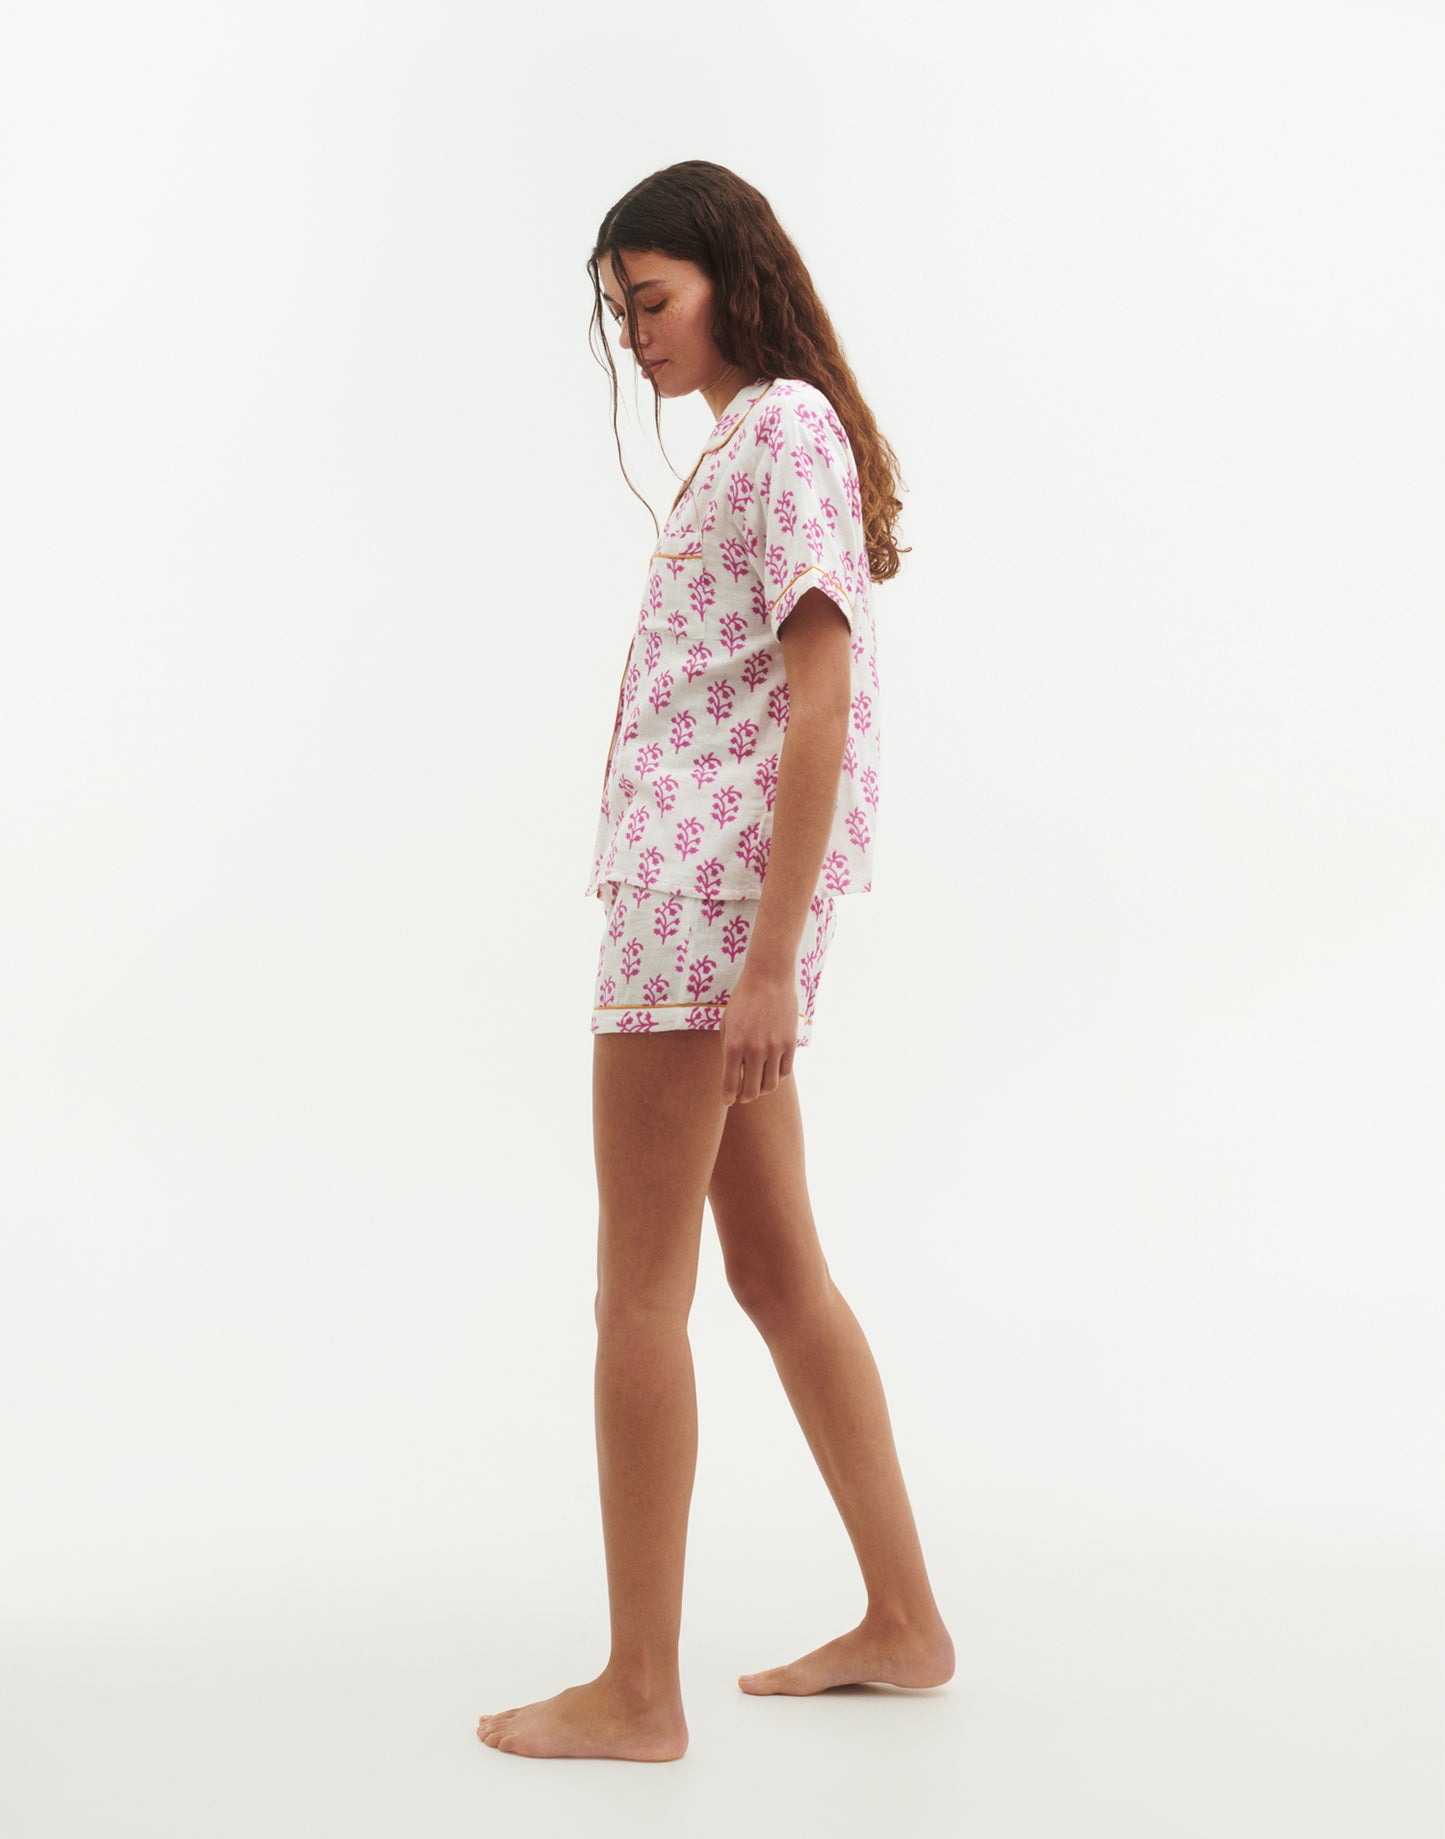 Double cotton Jaya pajamas